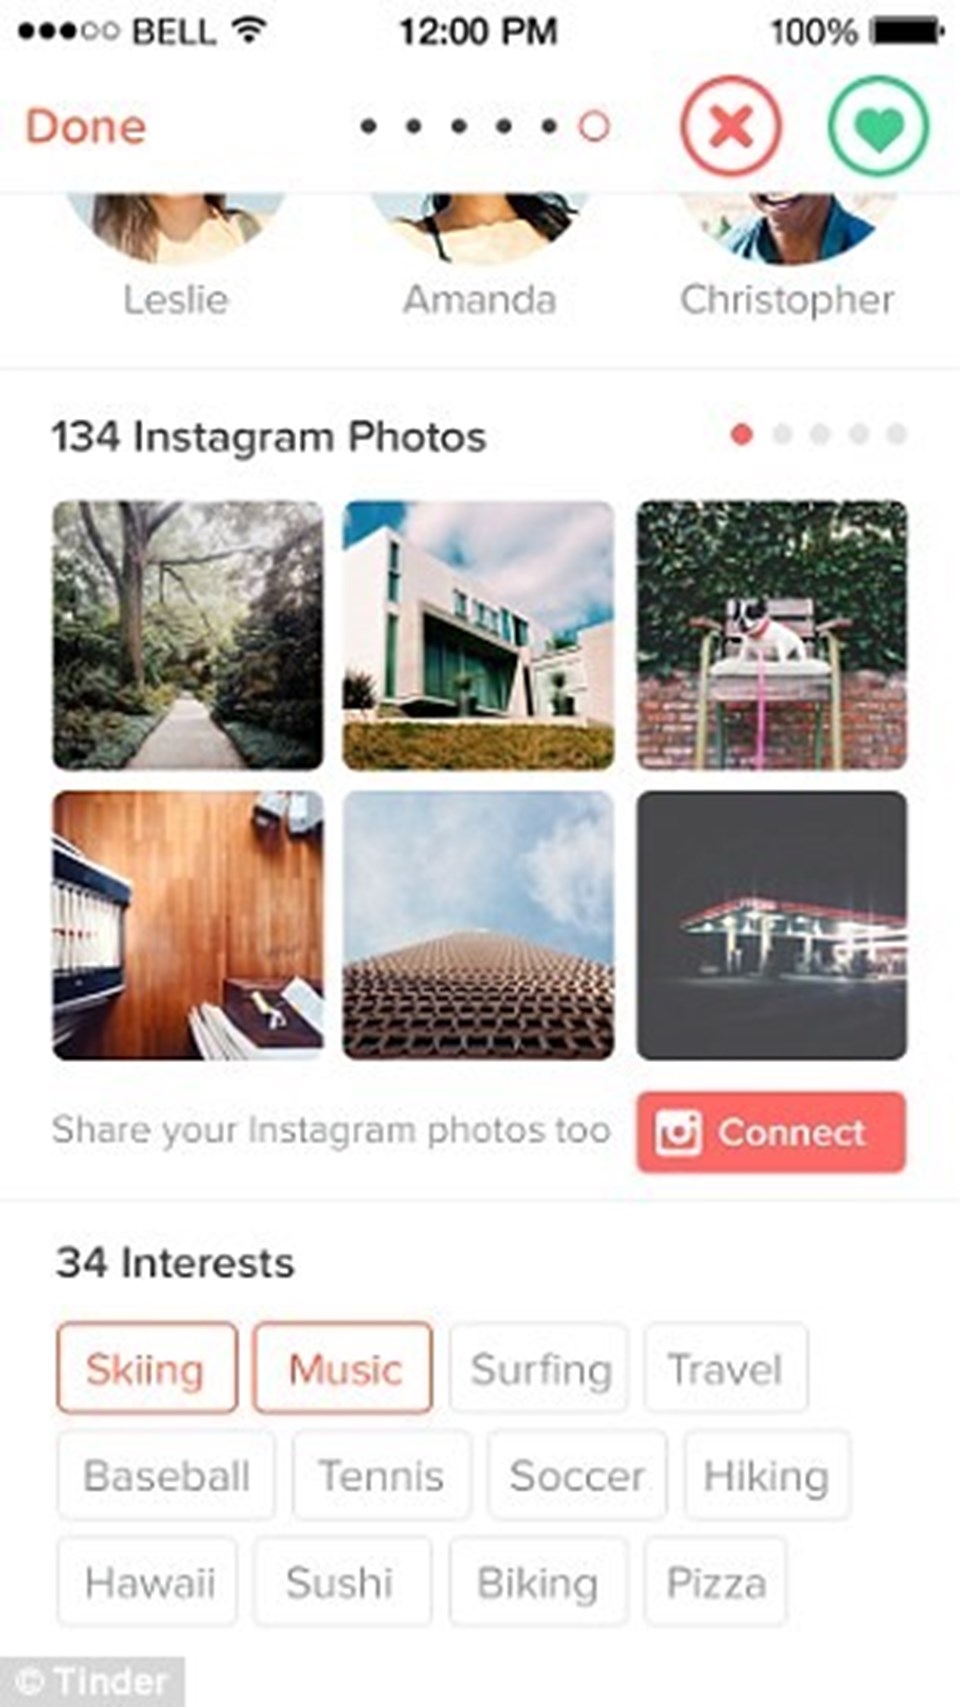 Uygulama kullanıcıların son 34 Instagram paylaşımını Tinder profillerinde yayınlamalarına izin veriyor.